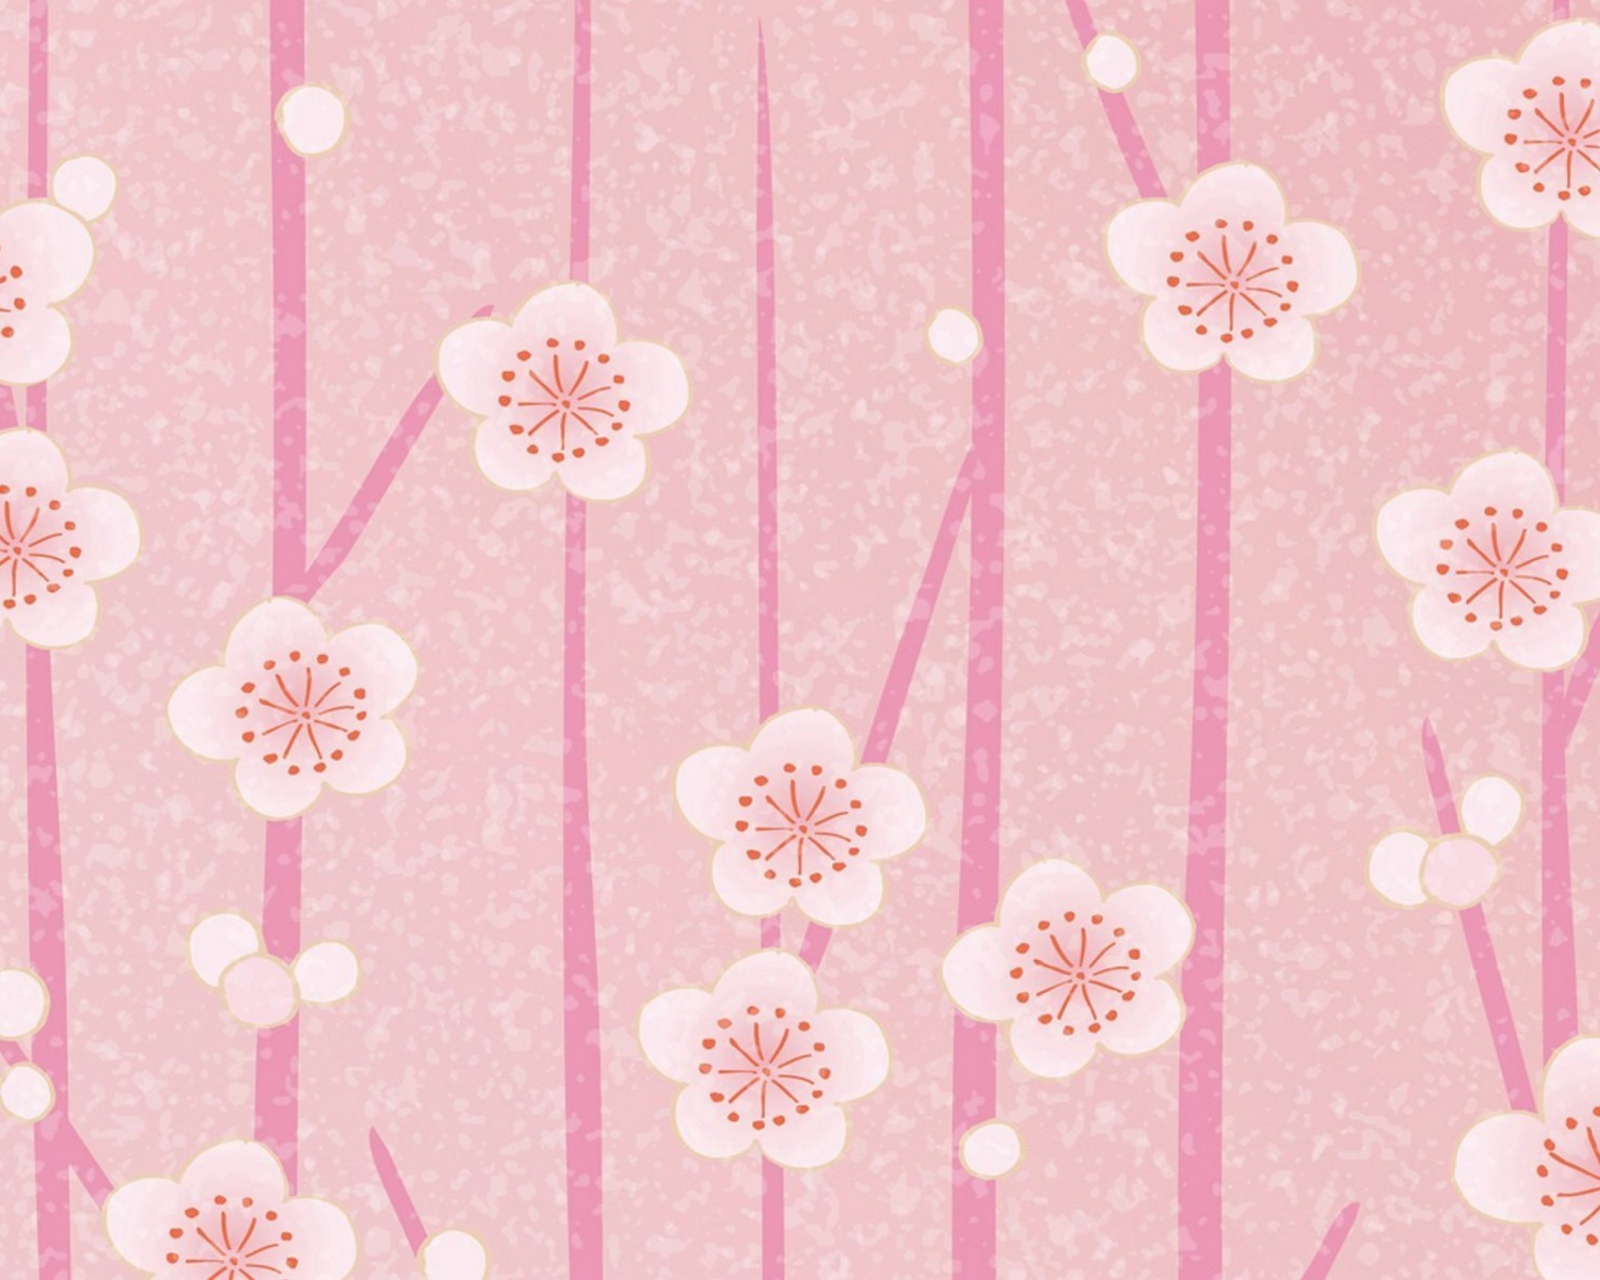 Das Pink Flowers Wallpaper Wallpaper 1600x1280